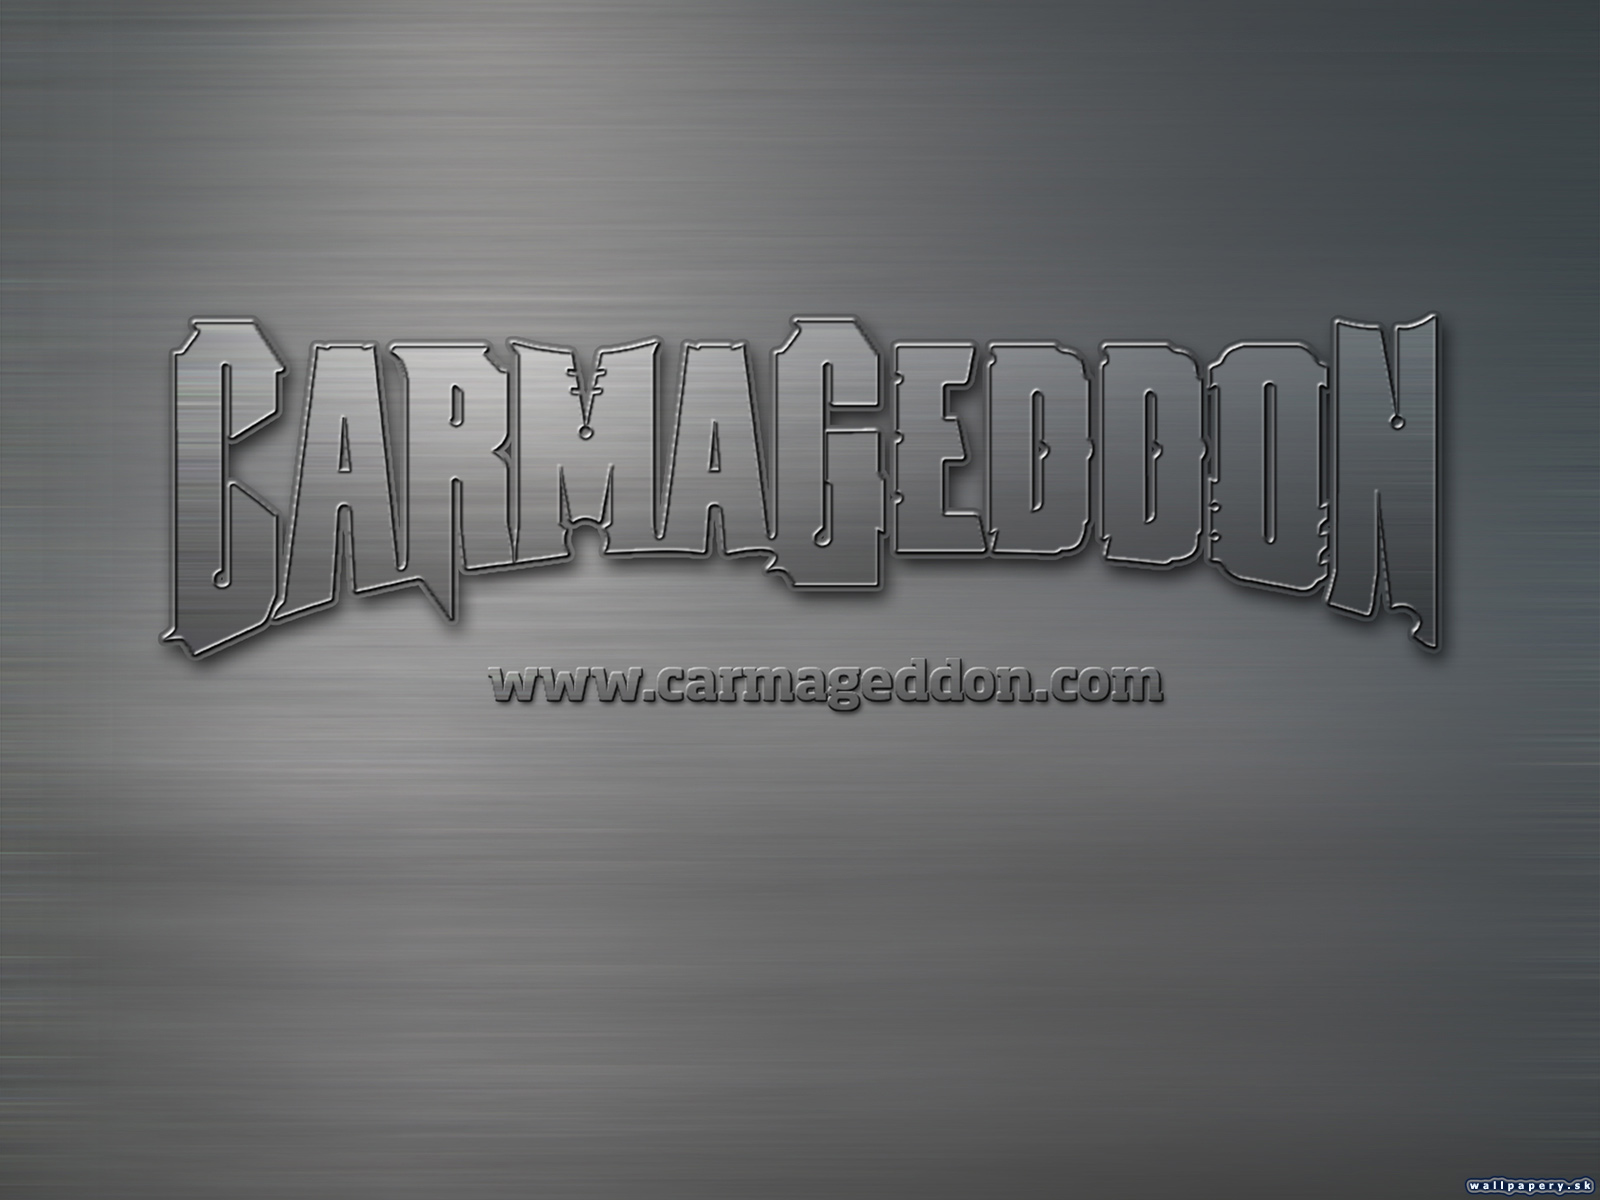 Carmageddon - wallpaper 6